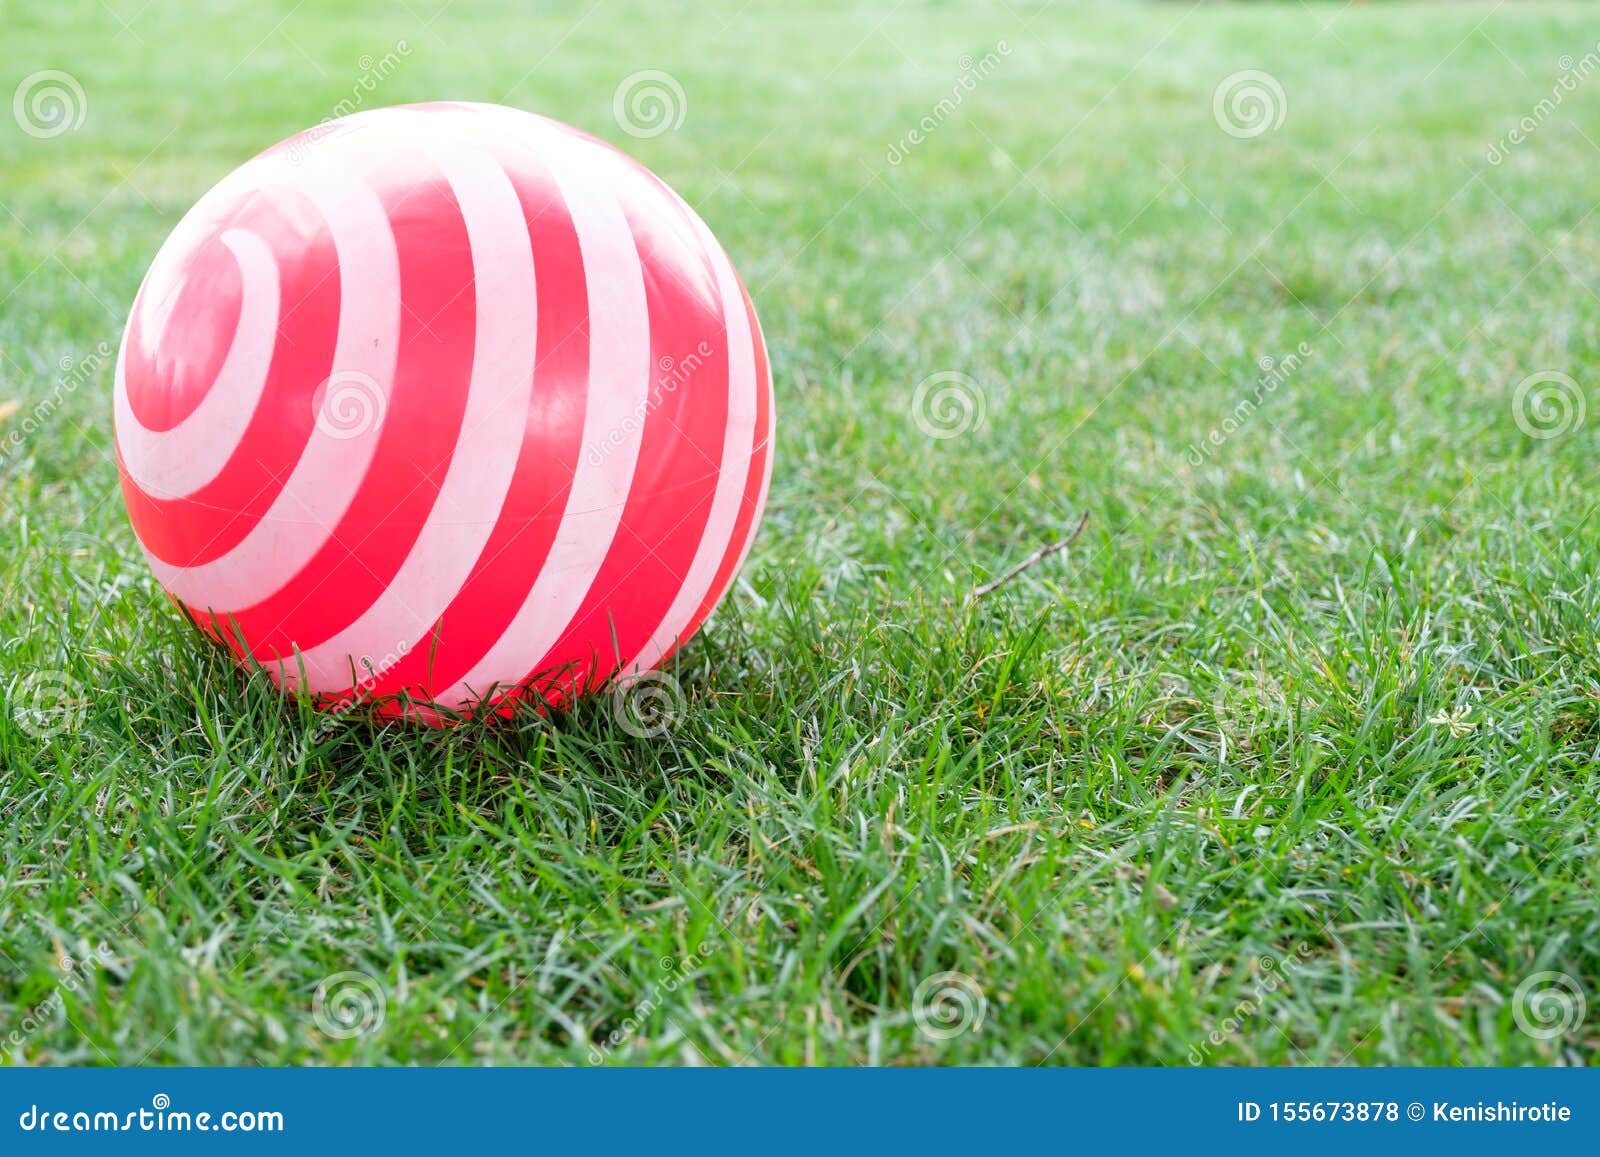 Bola De Campo De Jogos Vermelha Na Grama Verde Imagem de Stock - Imagem de  ponteiro, vermelho: 143342079